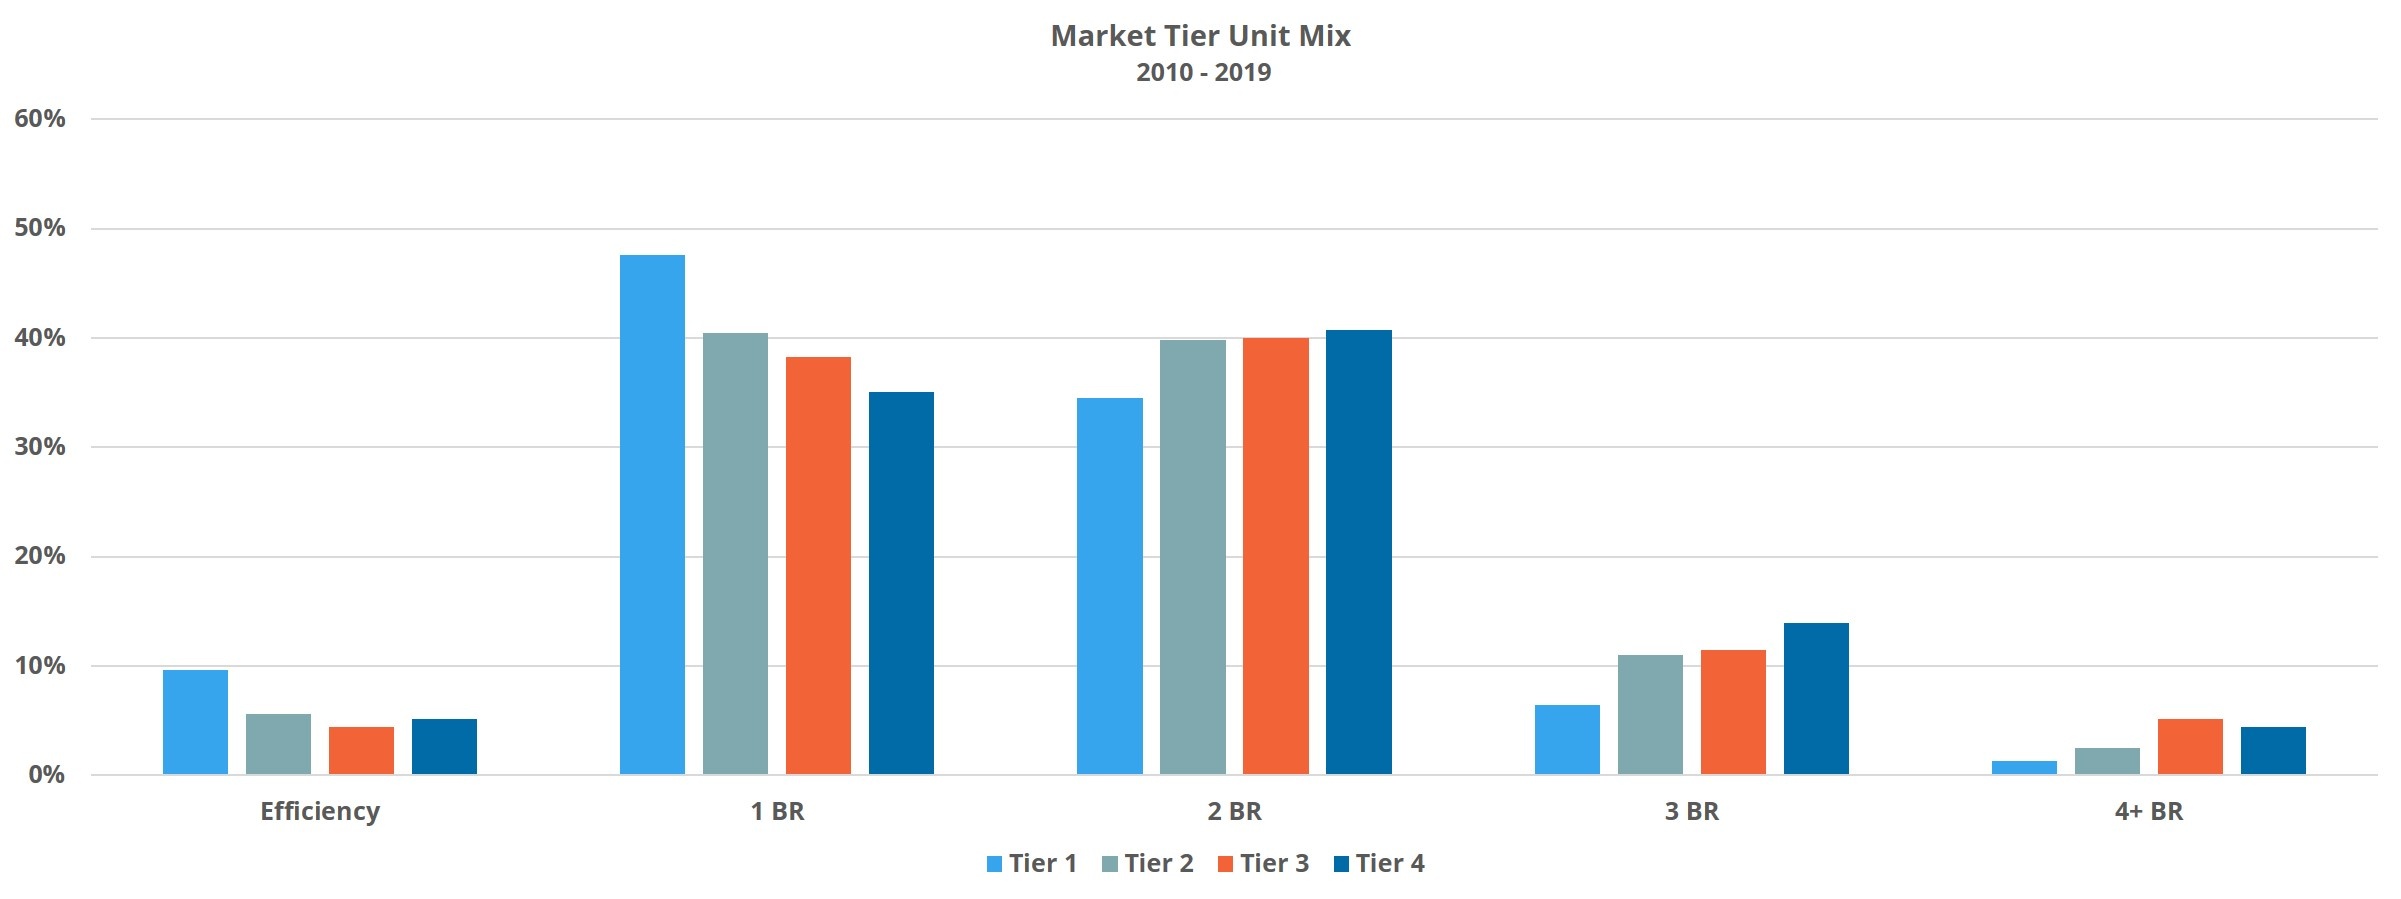 Market Tier Unit Mix